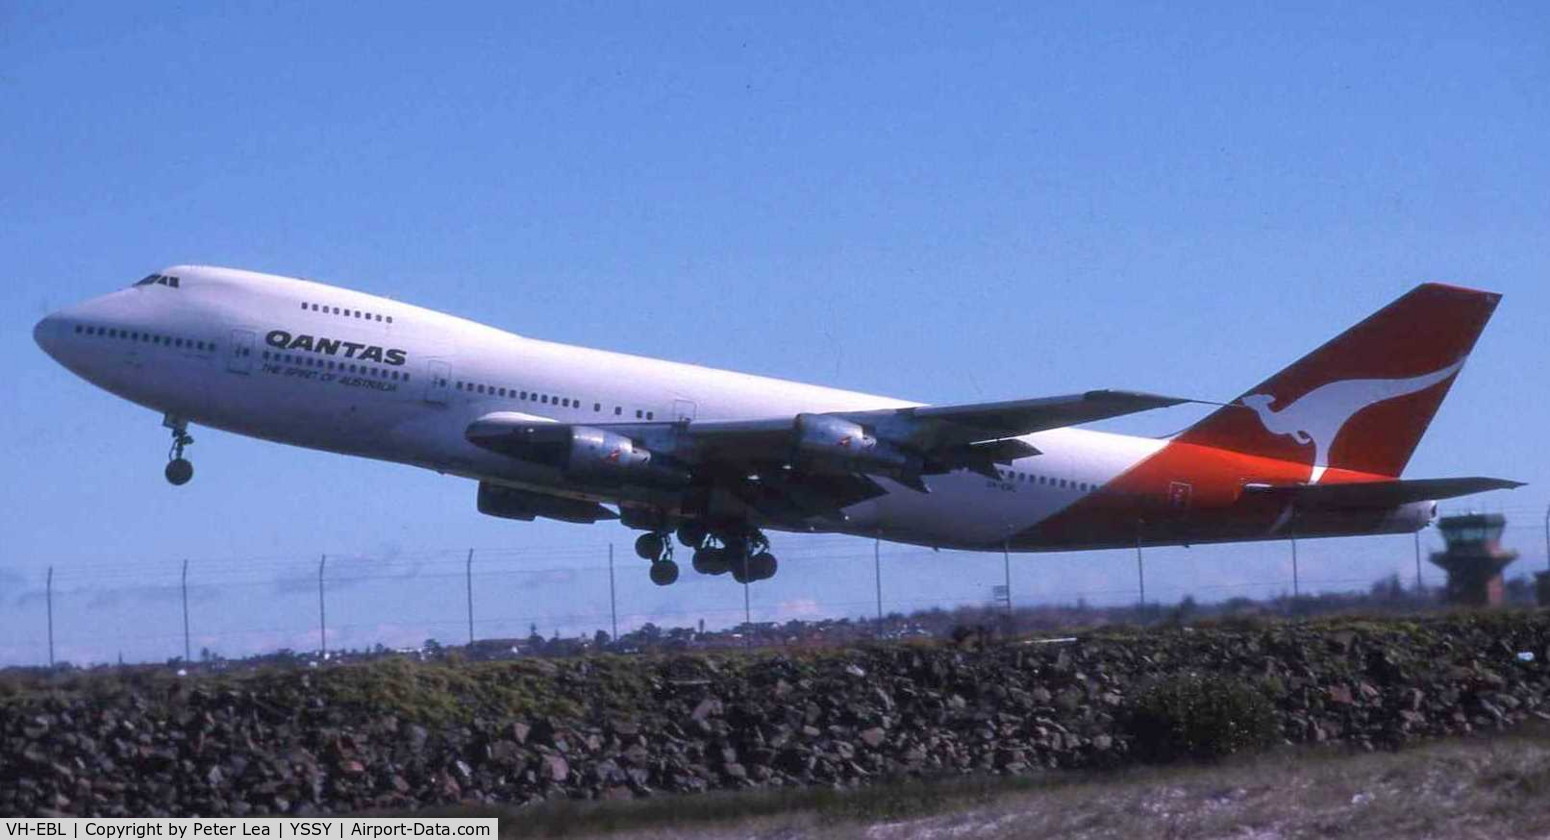 VH-EBL, 1976 Boeing 747-238B C/N 21237, Photo taken at Sydney in 1988